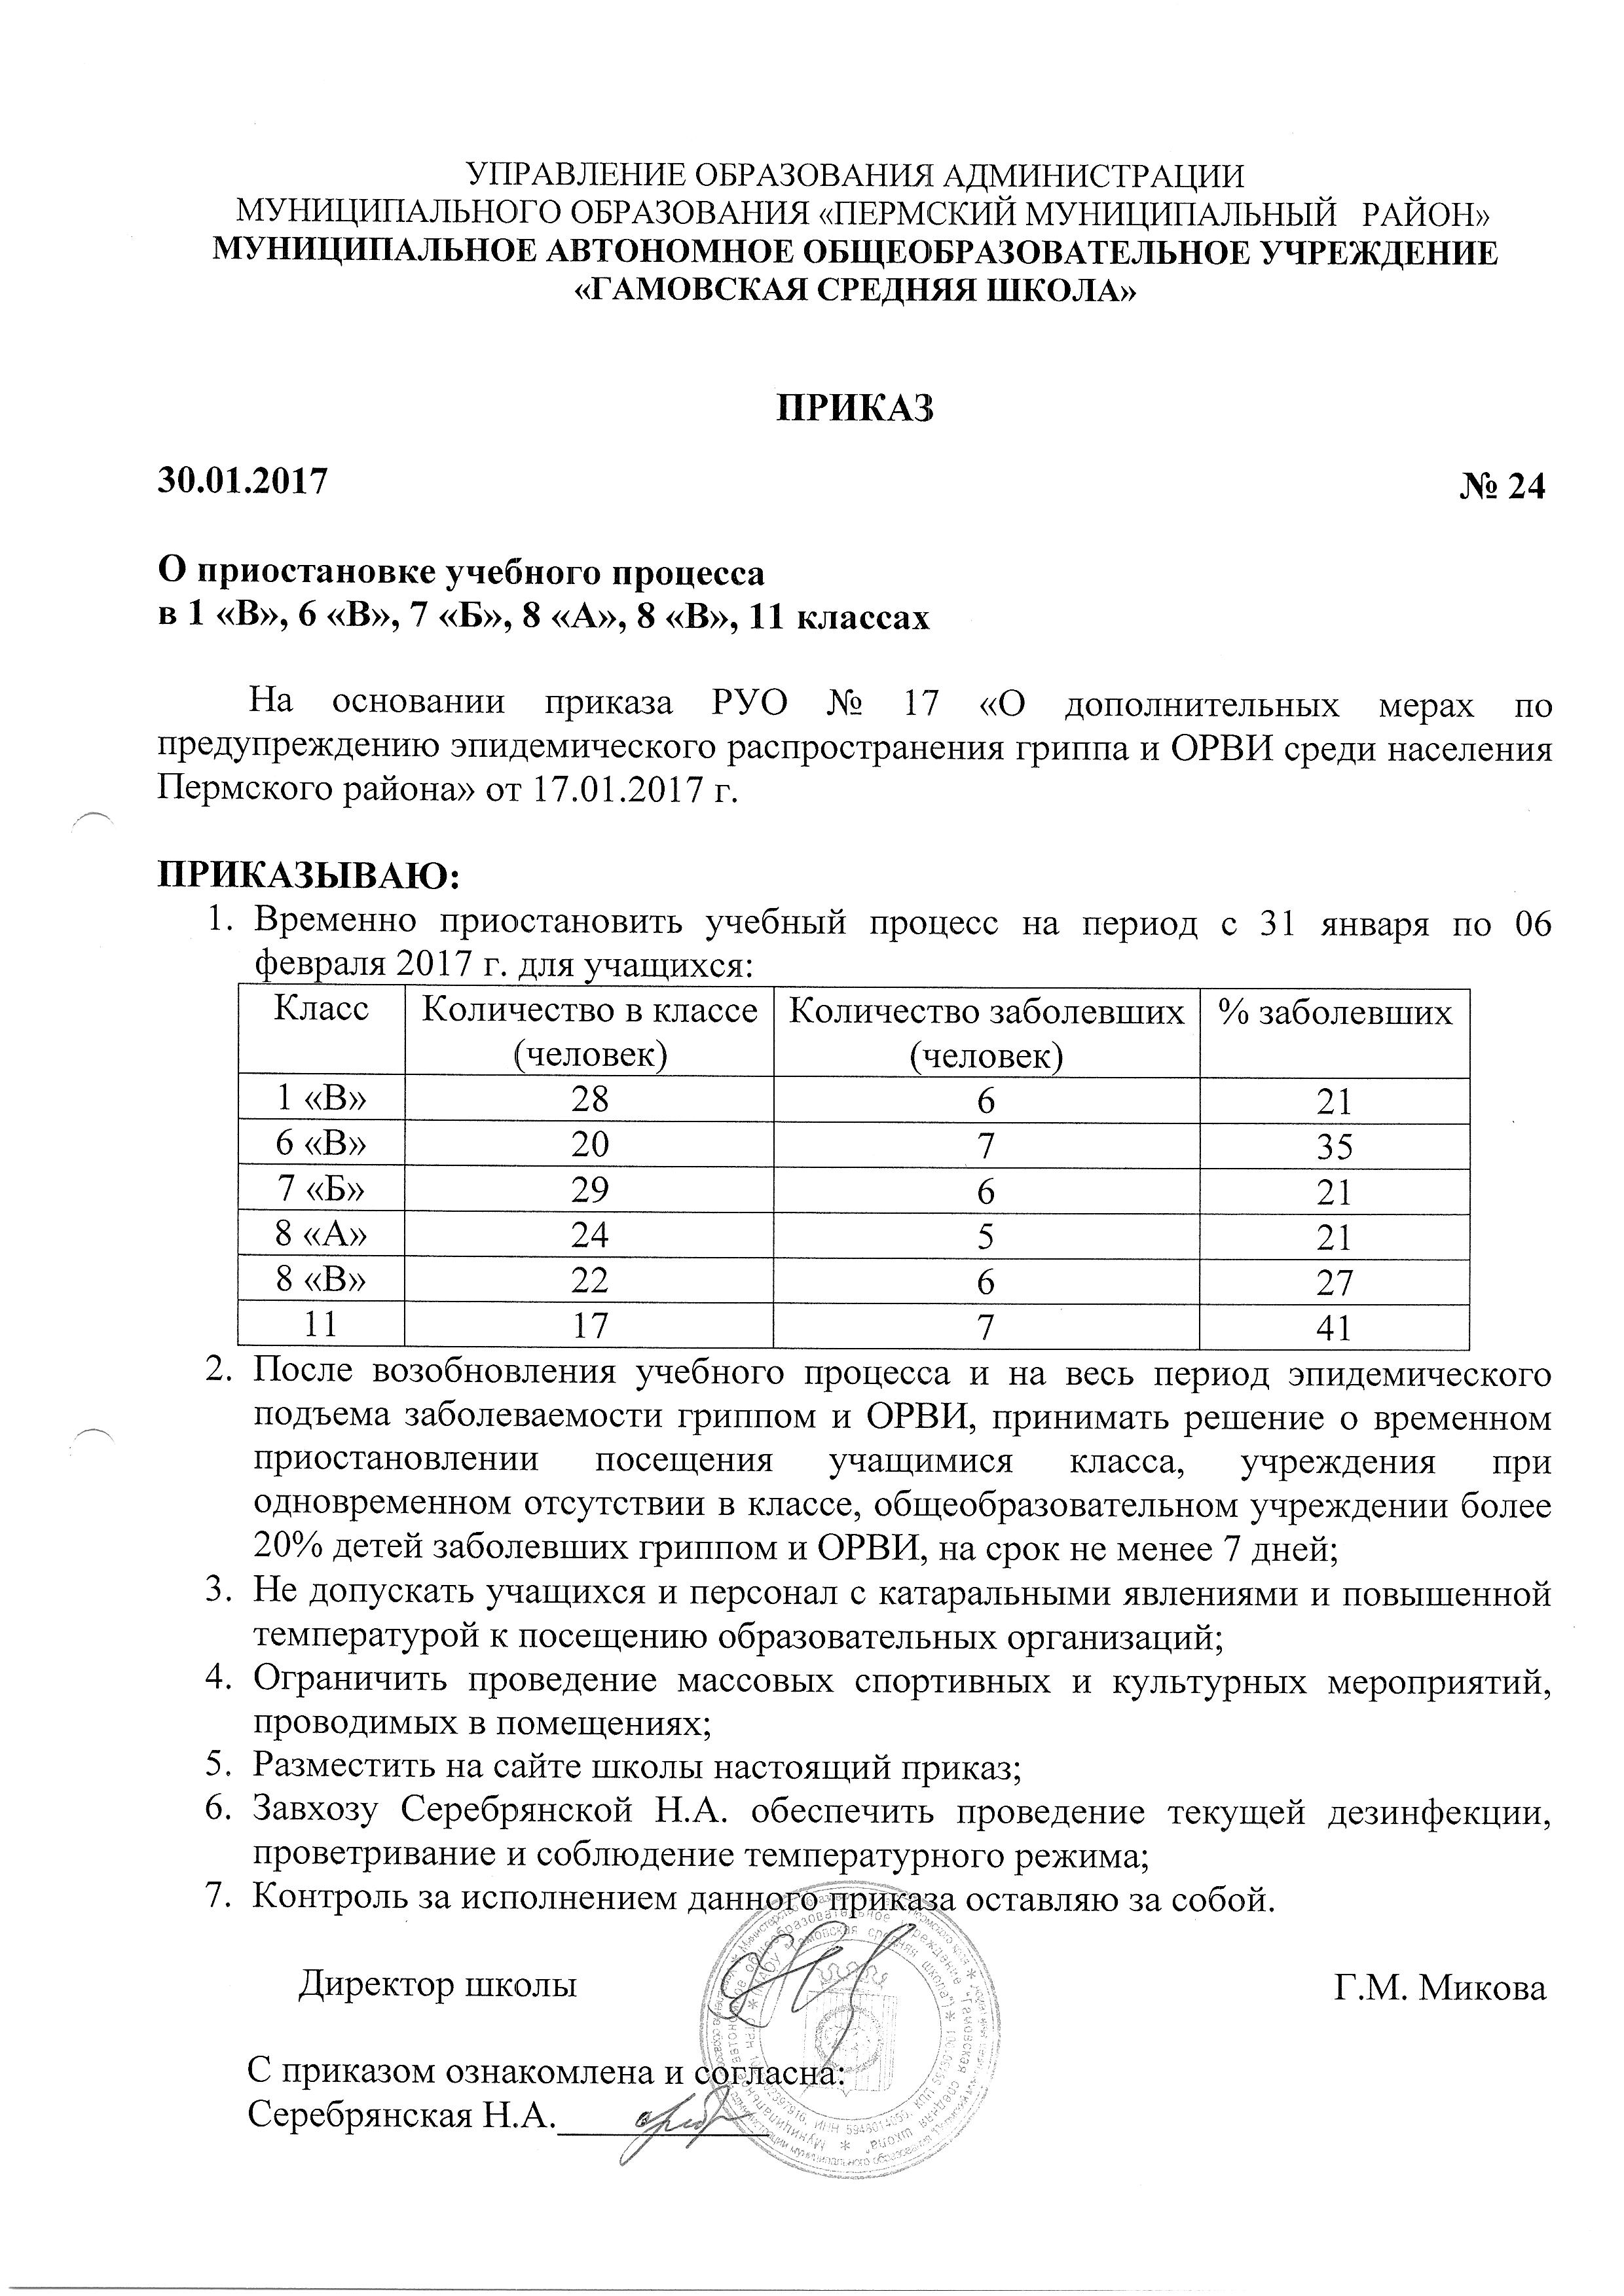 Приказ № 24 О приостановке учебного процесса в школе от 30.01.2017